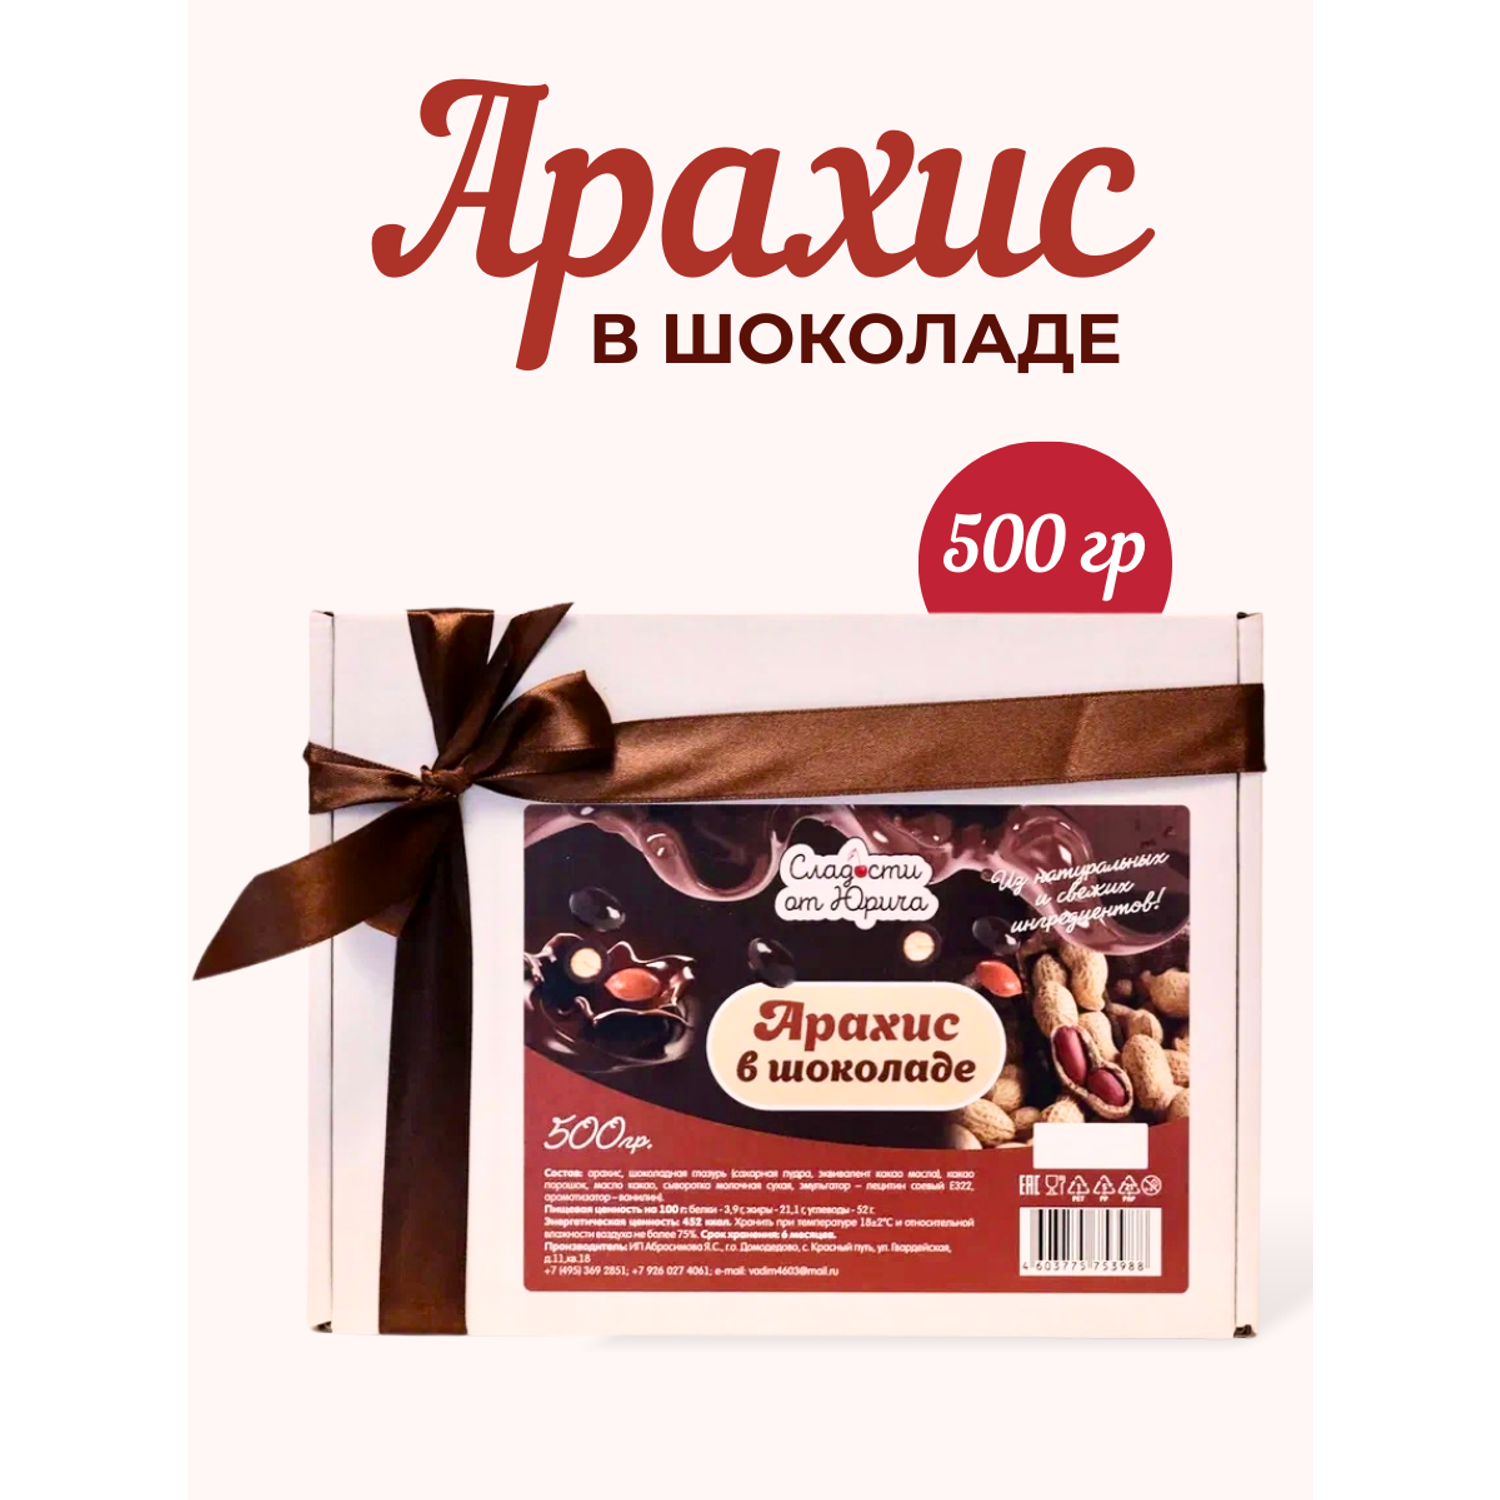 Арахис в шоколаде Сладости от Юрича 500гр - фото 1